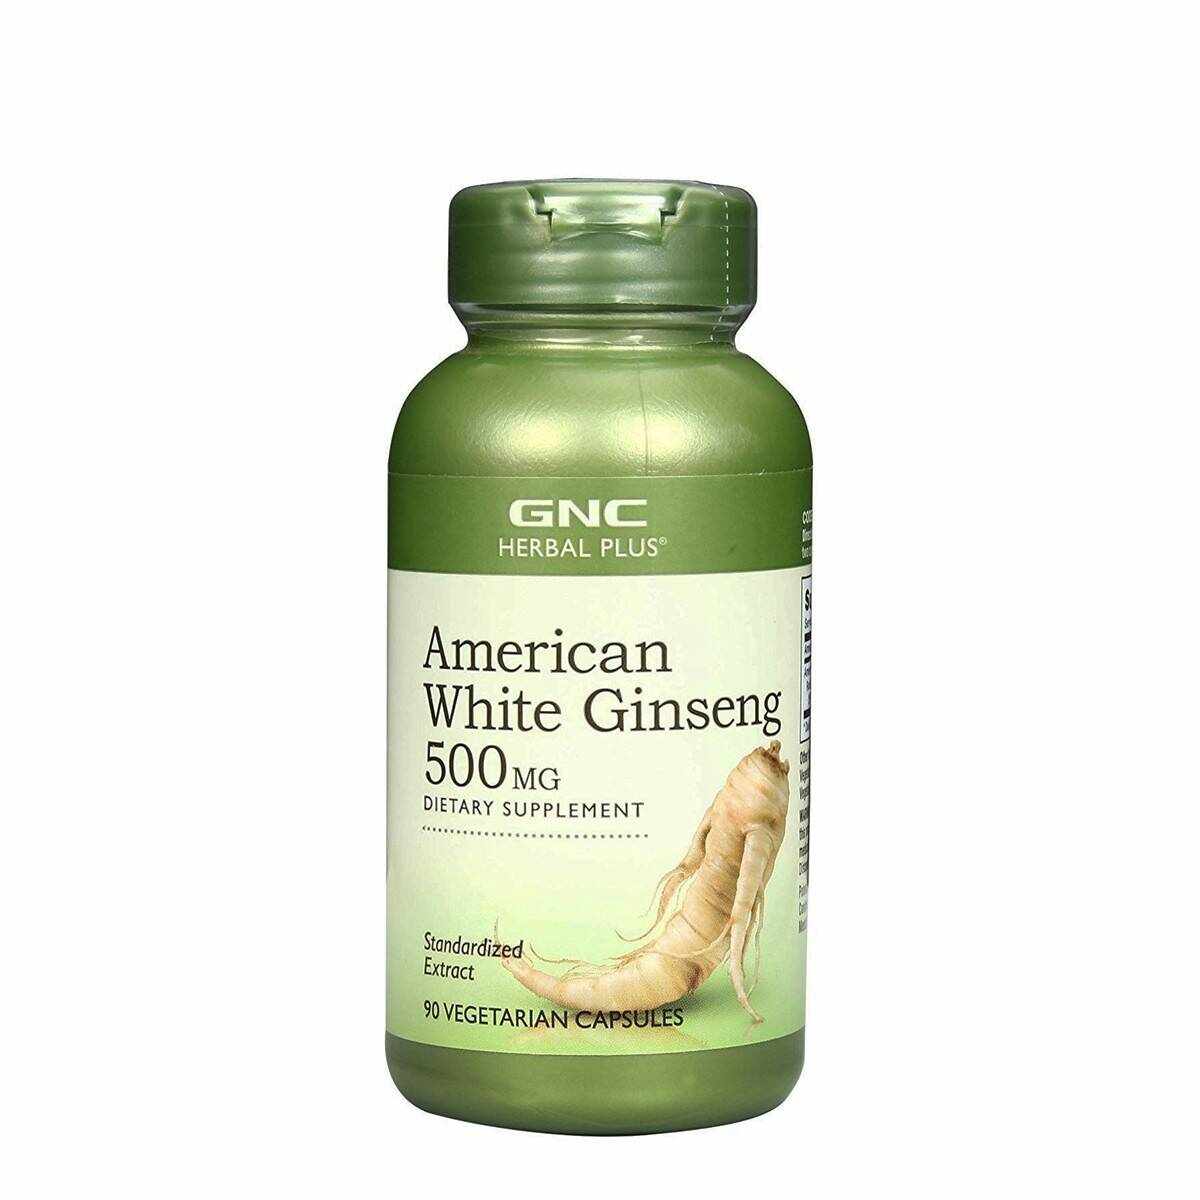 American White Ginseng 500Mg, Ginseng Alb American, 90cps - Gnc Herbal Plus